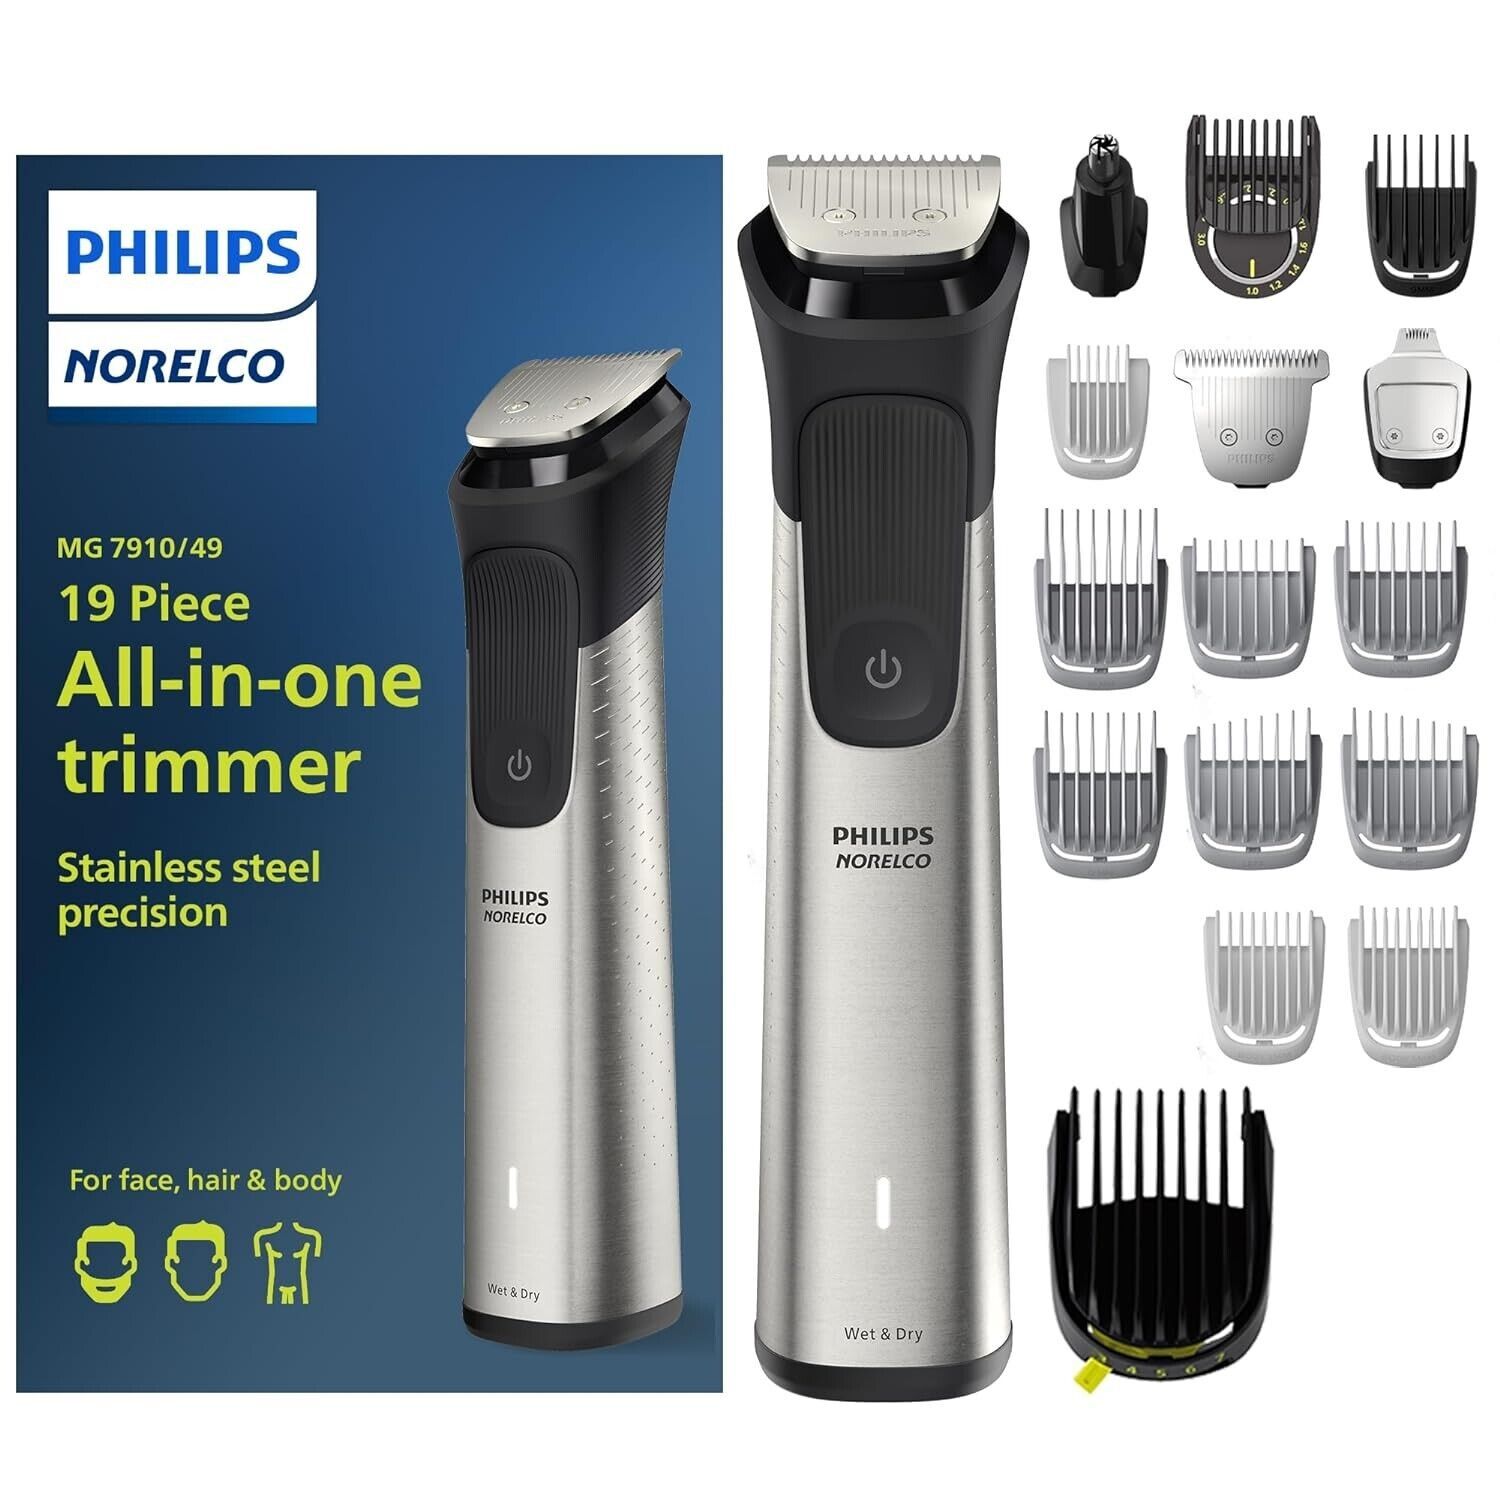 One time used - Philips Norelco Multigroom Series 7000, Mens Grooming Kit - $39.60